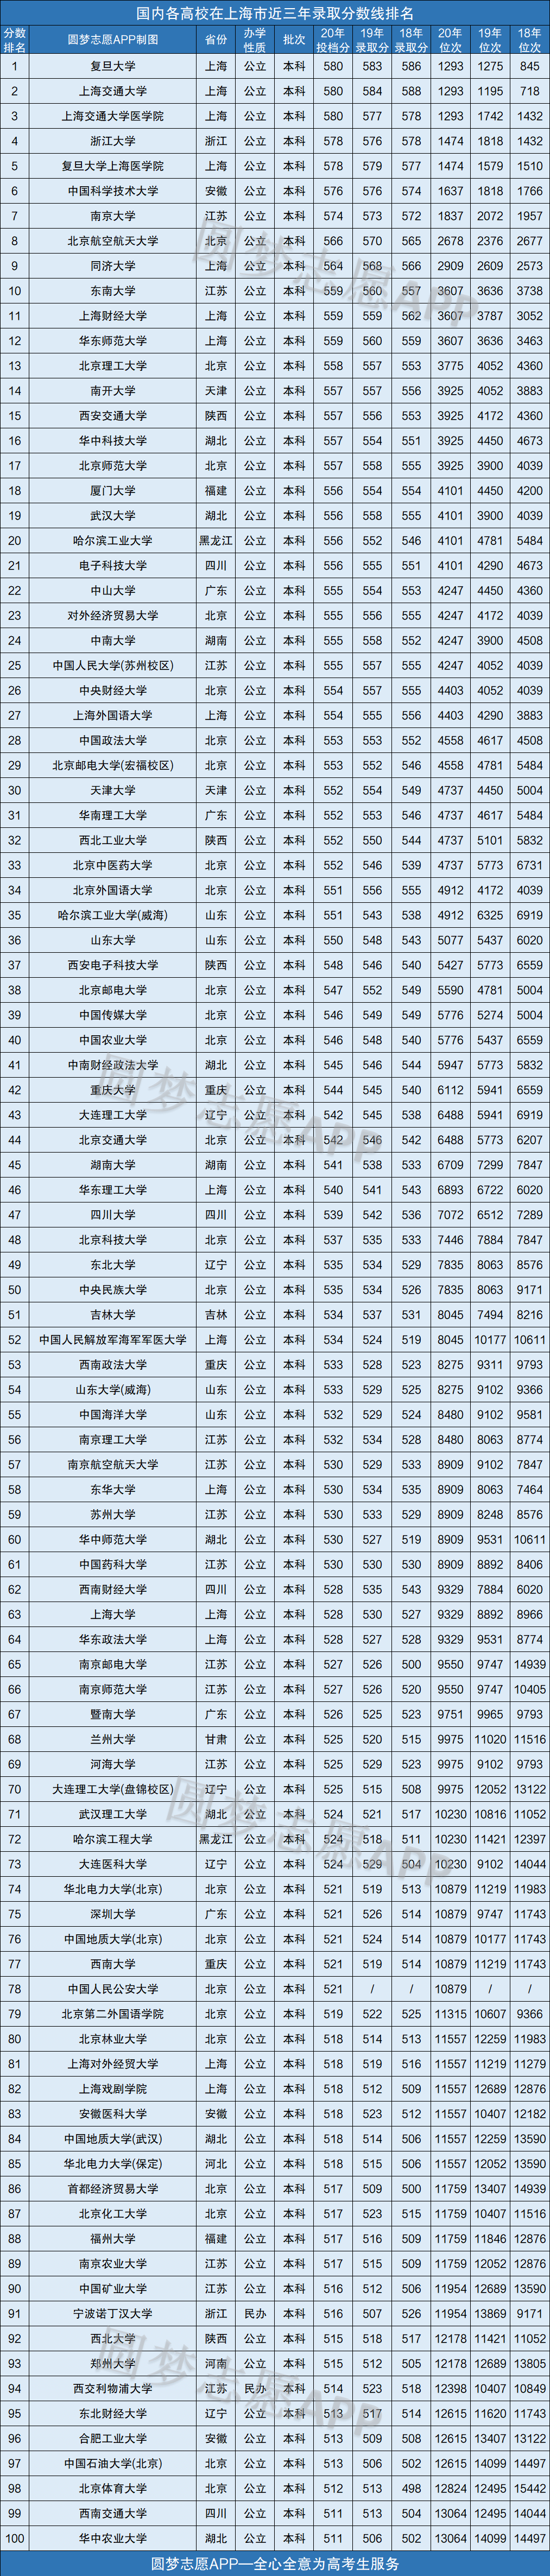 上海所有大学录取分数线2021参考:2020年各高校在上海